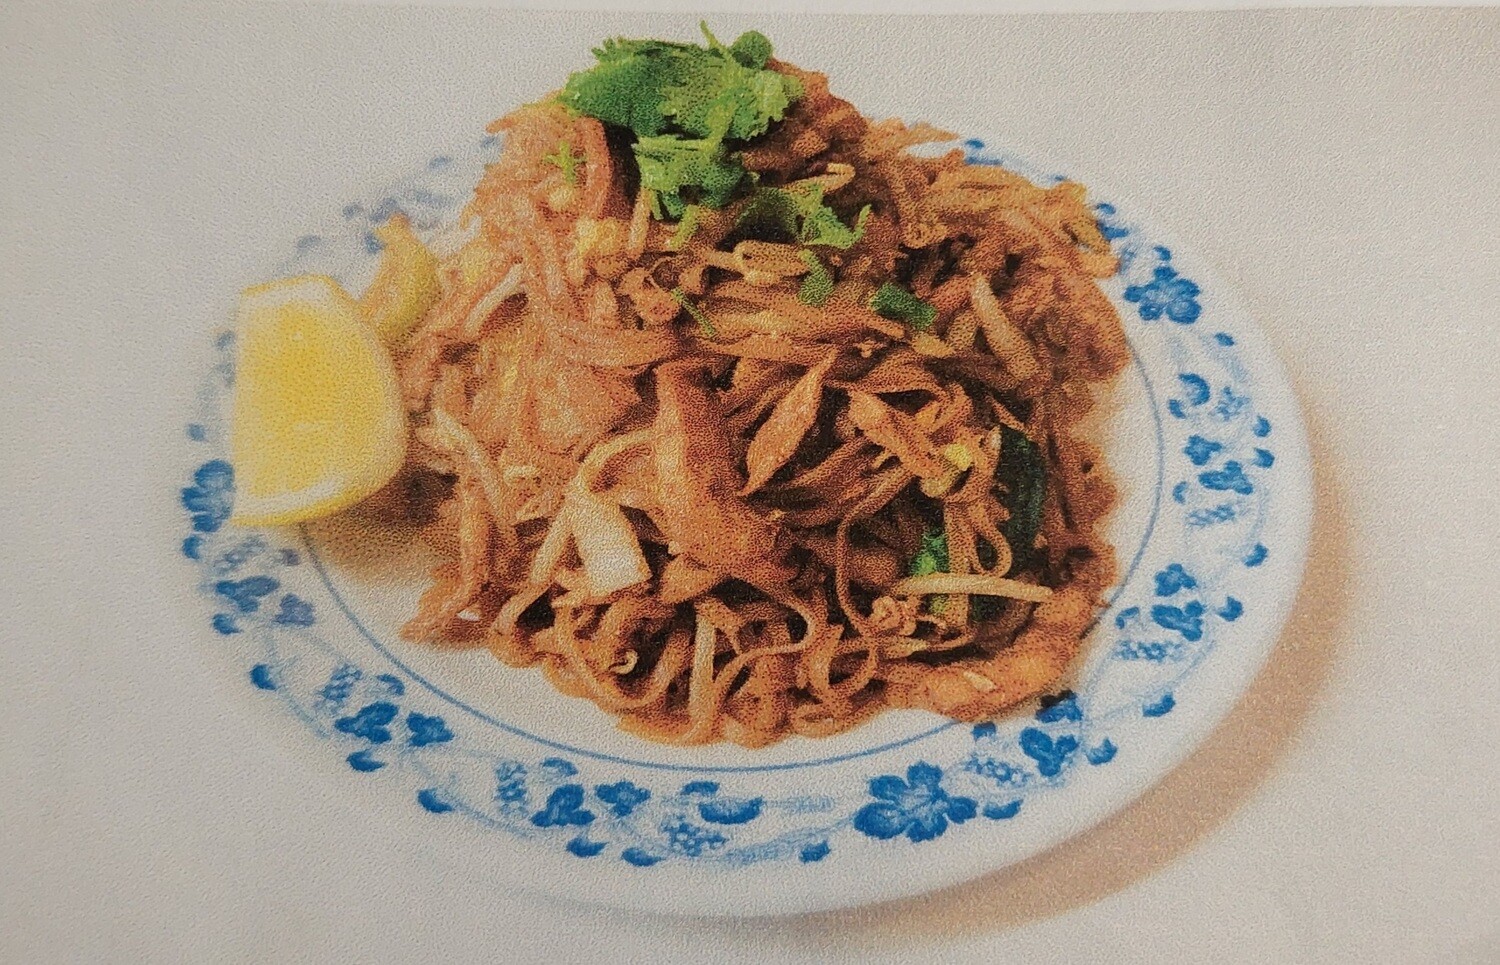 104. Nouille sautées avec légumes / Fried rice noodles with vegetable